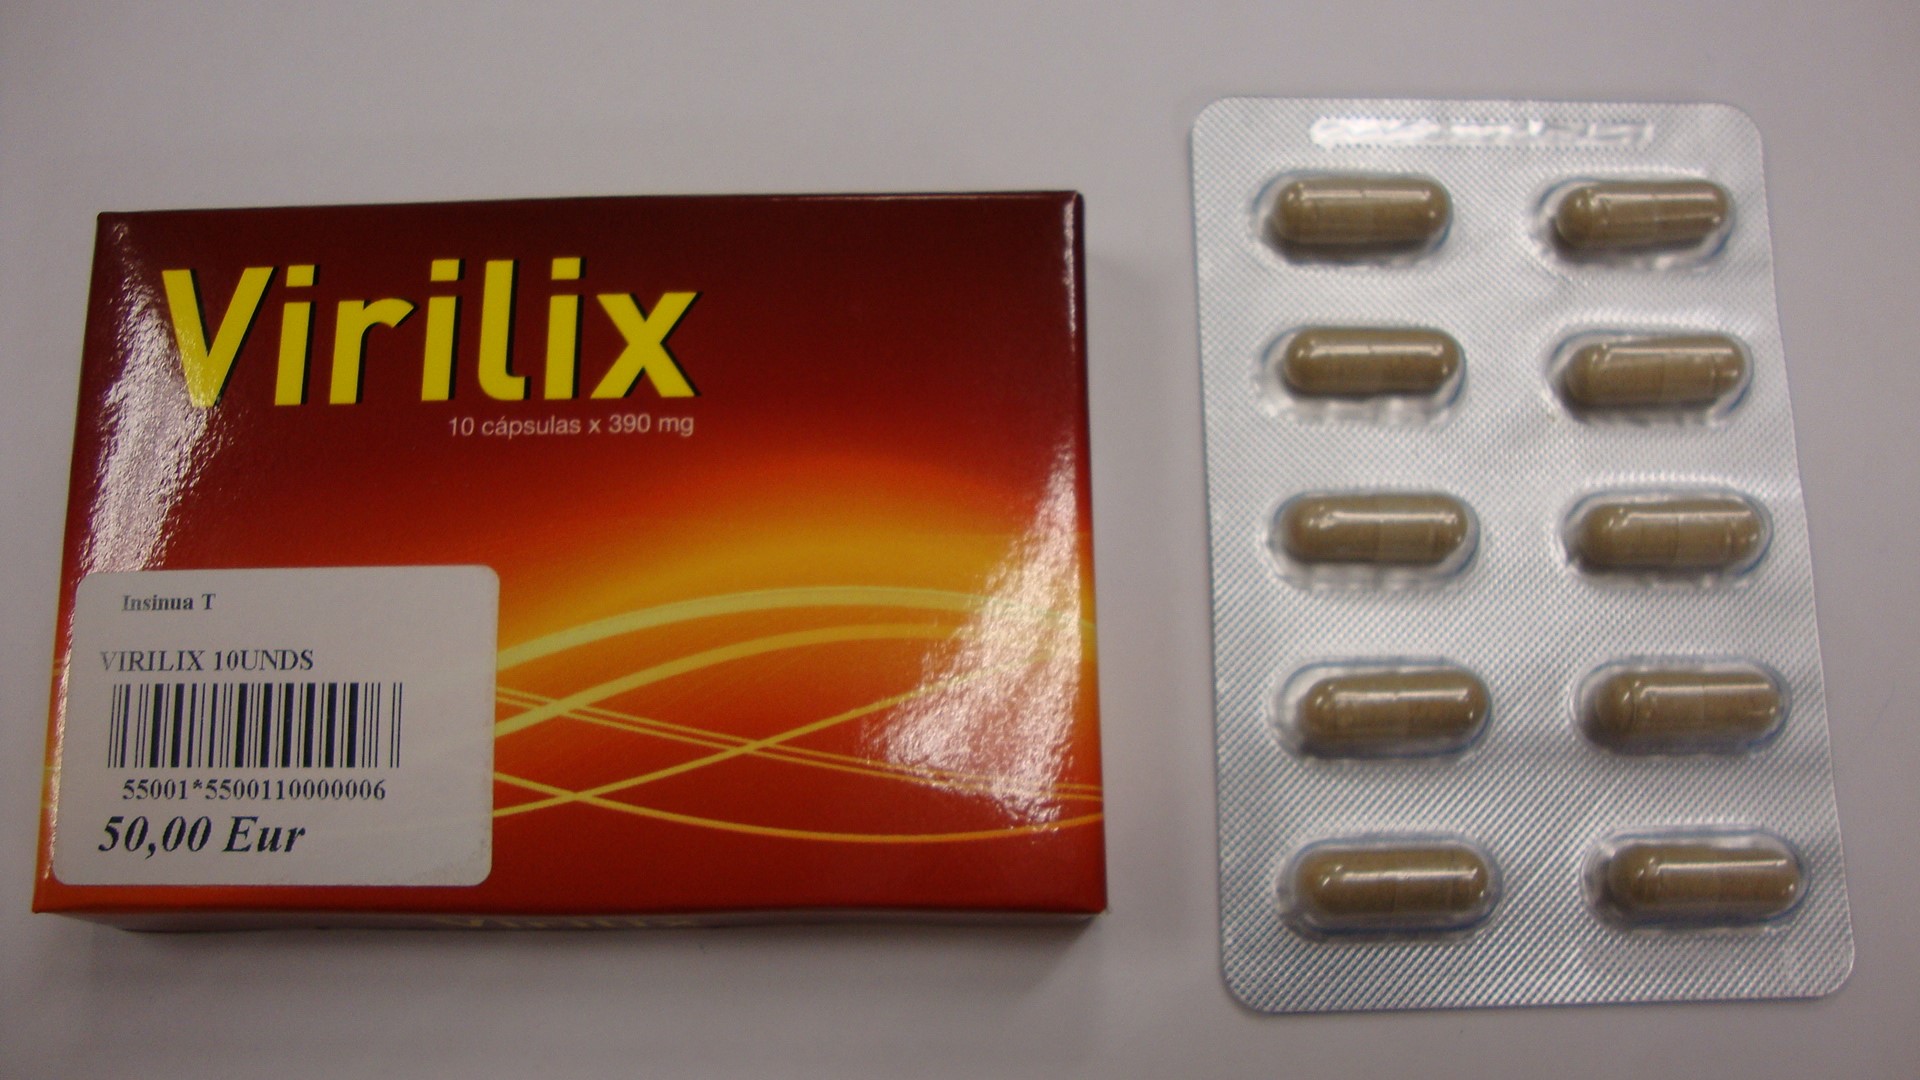 Image of the illigal product: Virilix